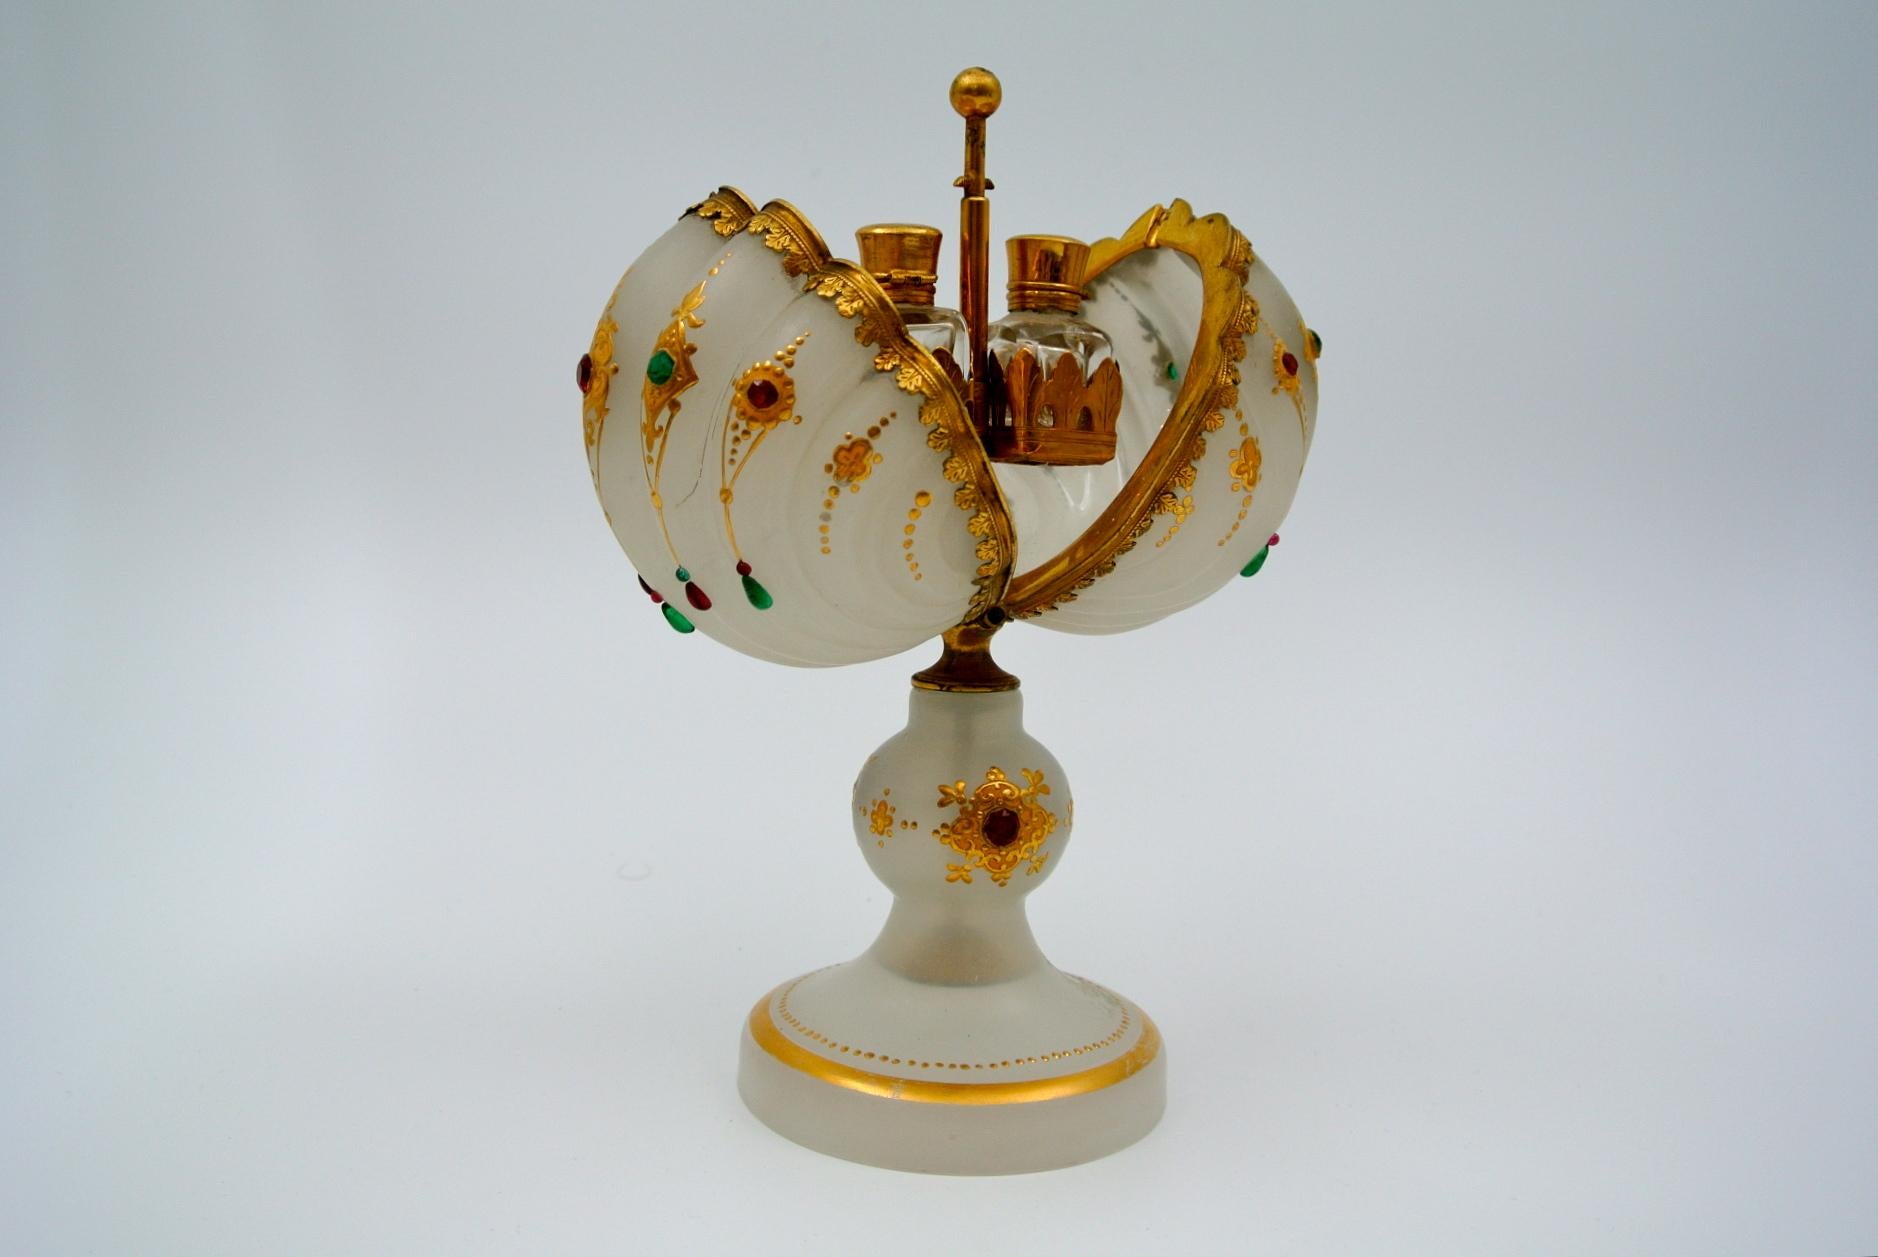 Porte-flacon en opaline émaillée blanche, monture en laiton, flacons en cristal, 19e siècle, époque Napoléon III
Taille : H 21cm, L 17cm, P 11cm.